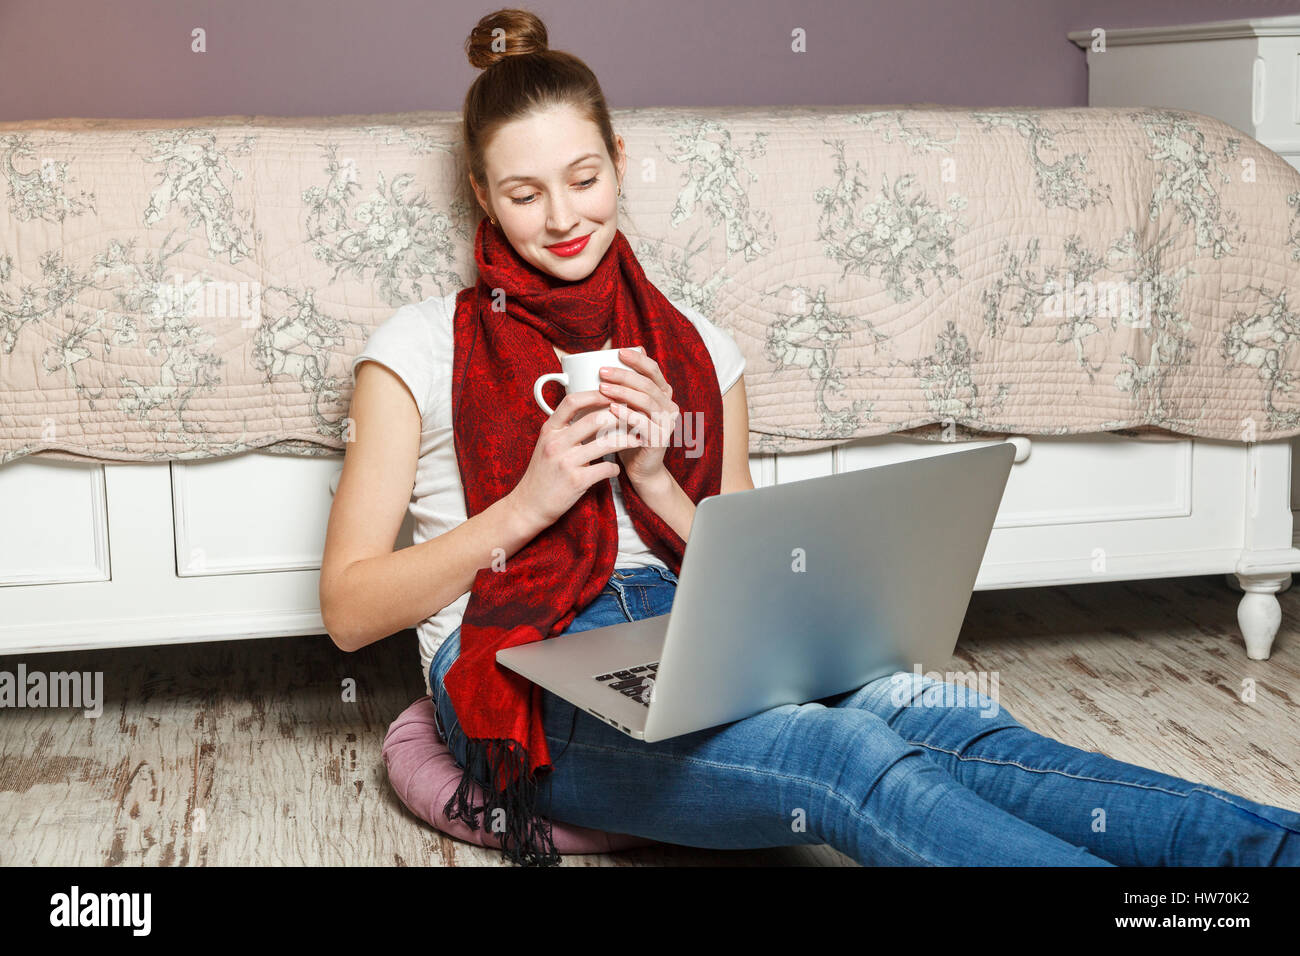 Femme d'Ecommerce. Jeune femme à l'aide d'ordinateur pour faire des achats en ligne, assis sur le plancher et de boire du café. Banque D'Images